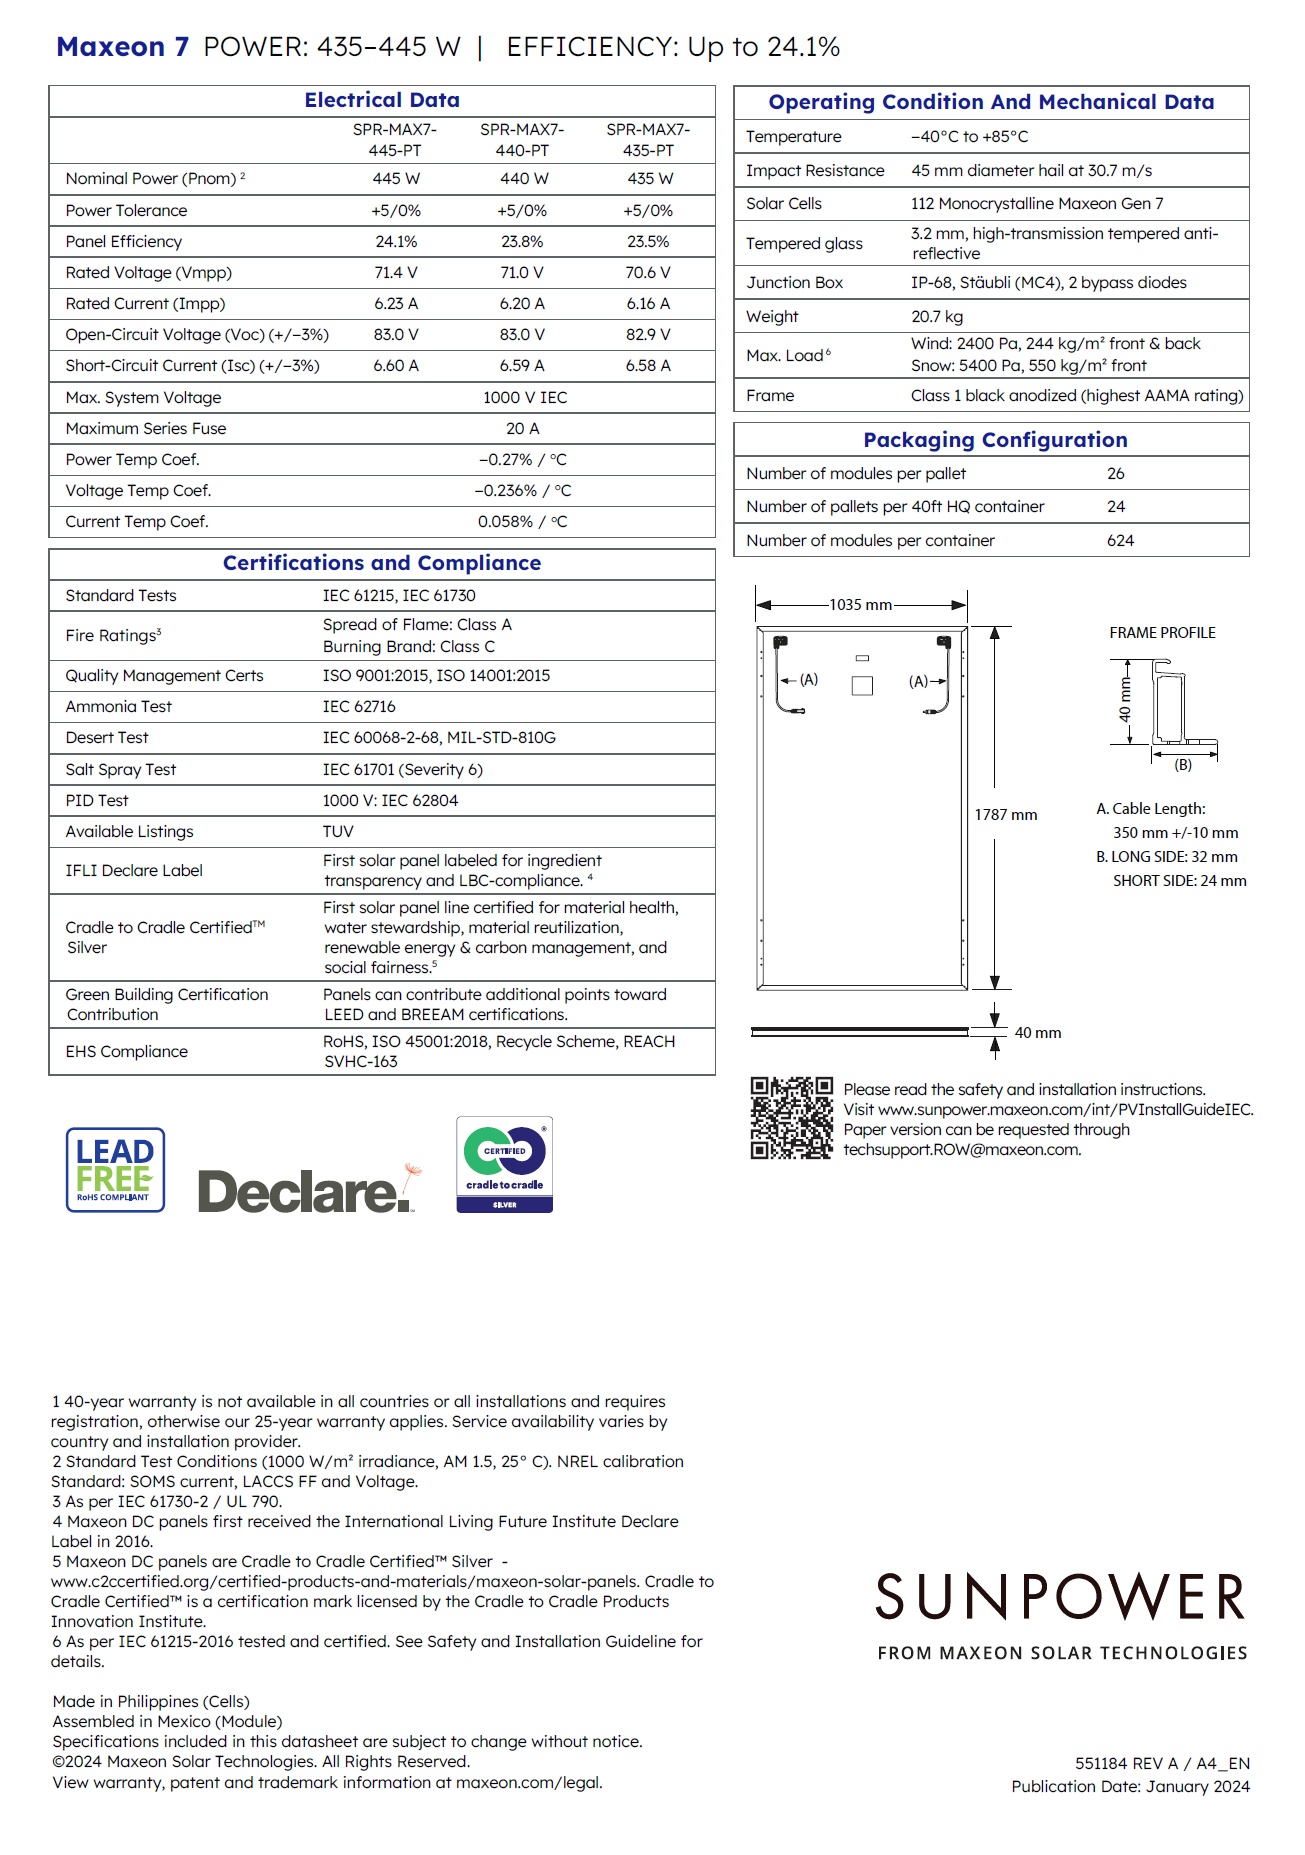 SunPower Maxeon 7 445W Datasheet Jan 2024 pg. 2